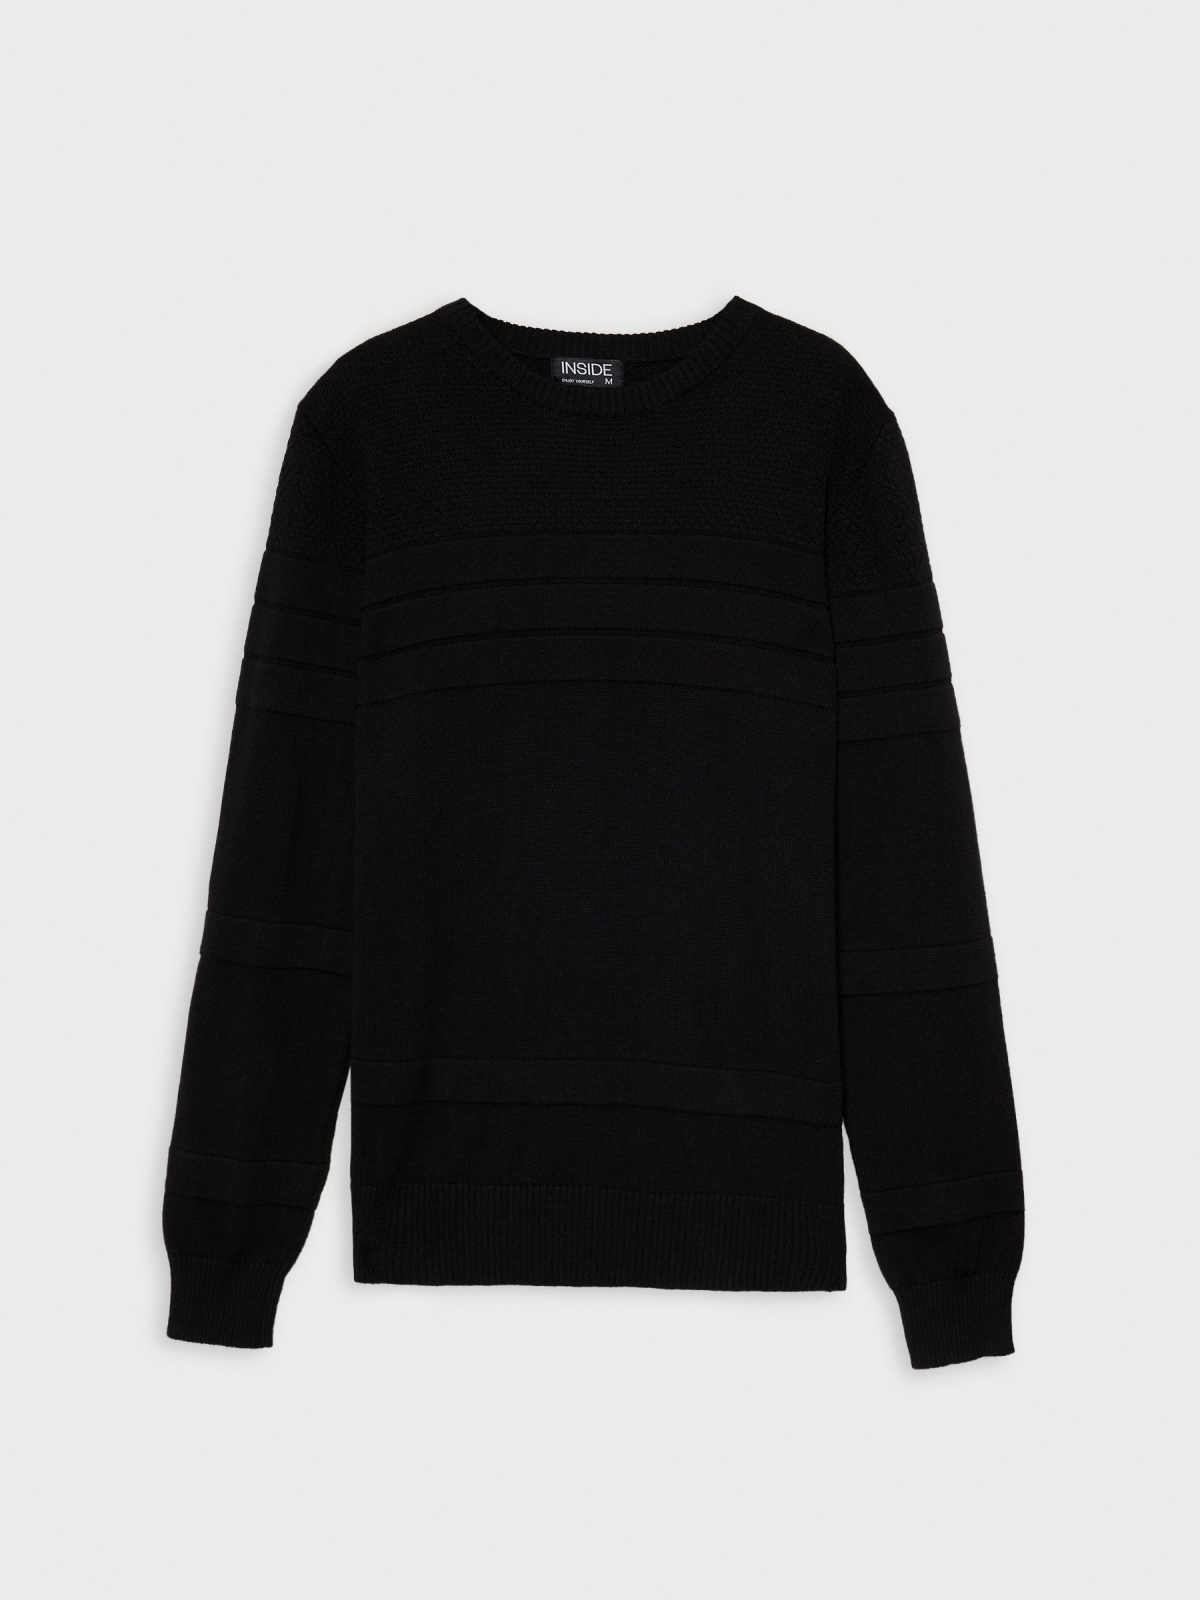  Suéter básico de textura com listras preto